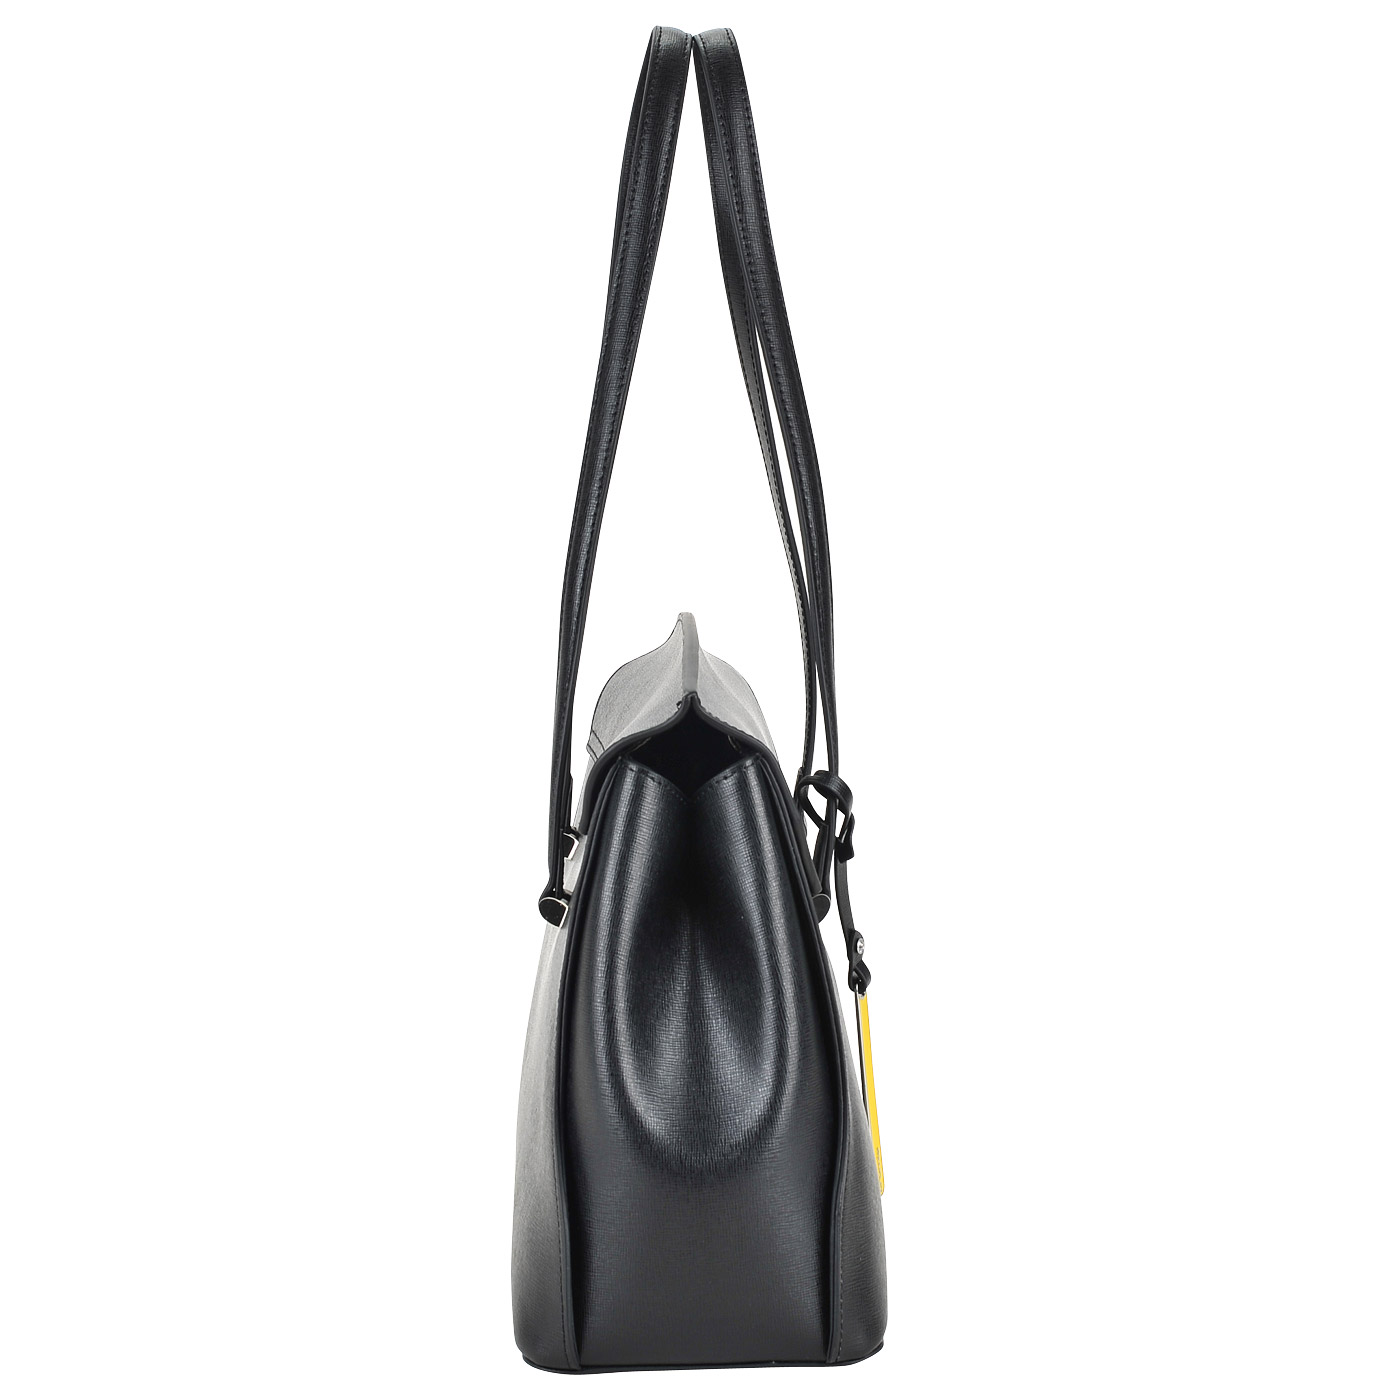 Вместительная кожаная сумка с длинными ручками Cromia Ologram